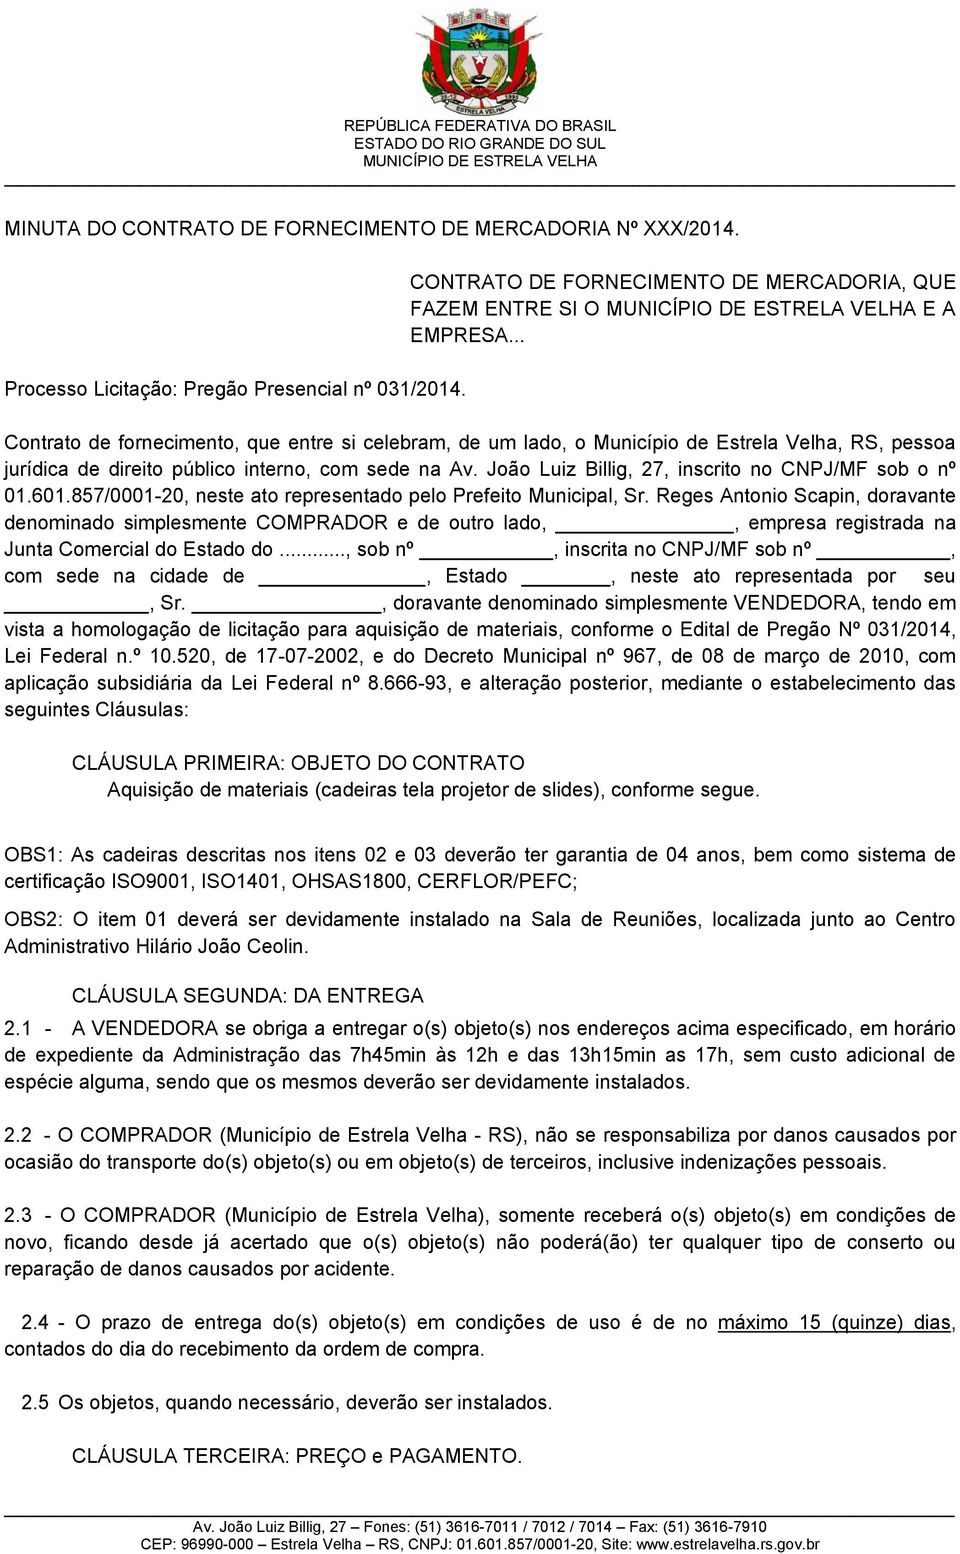 João Luiz Billig, 27, inscrito no CNPJ/MF sob o nº 01.601.857/0001-20, neste ato representado pelo Prefeito Municipal, Sr.